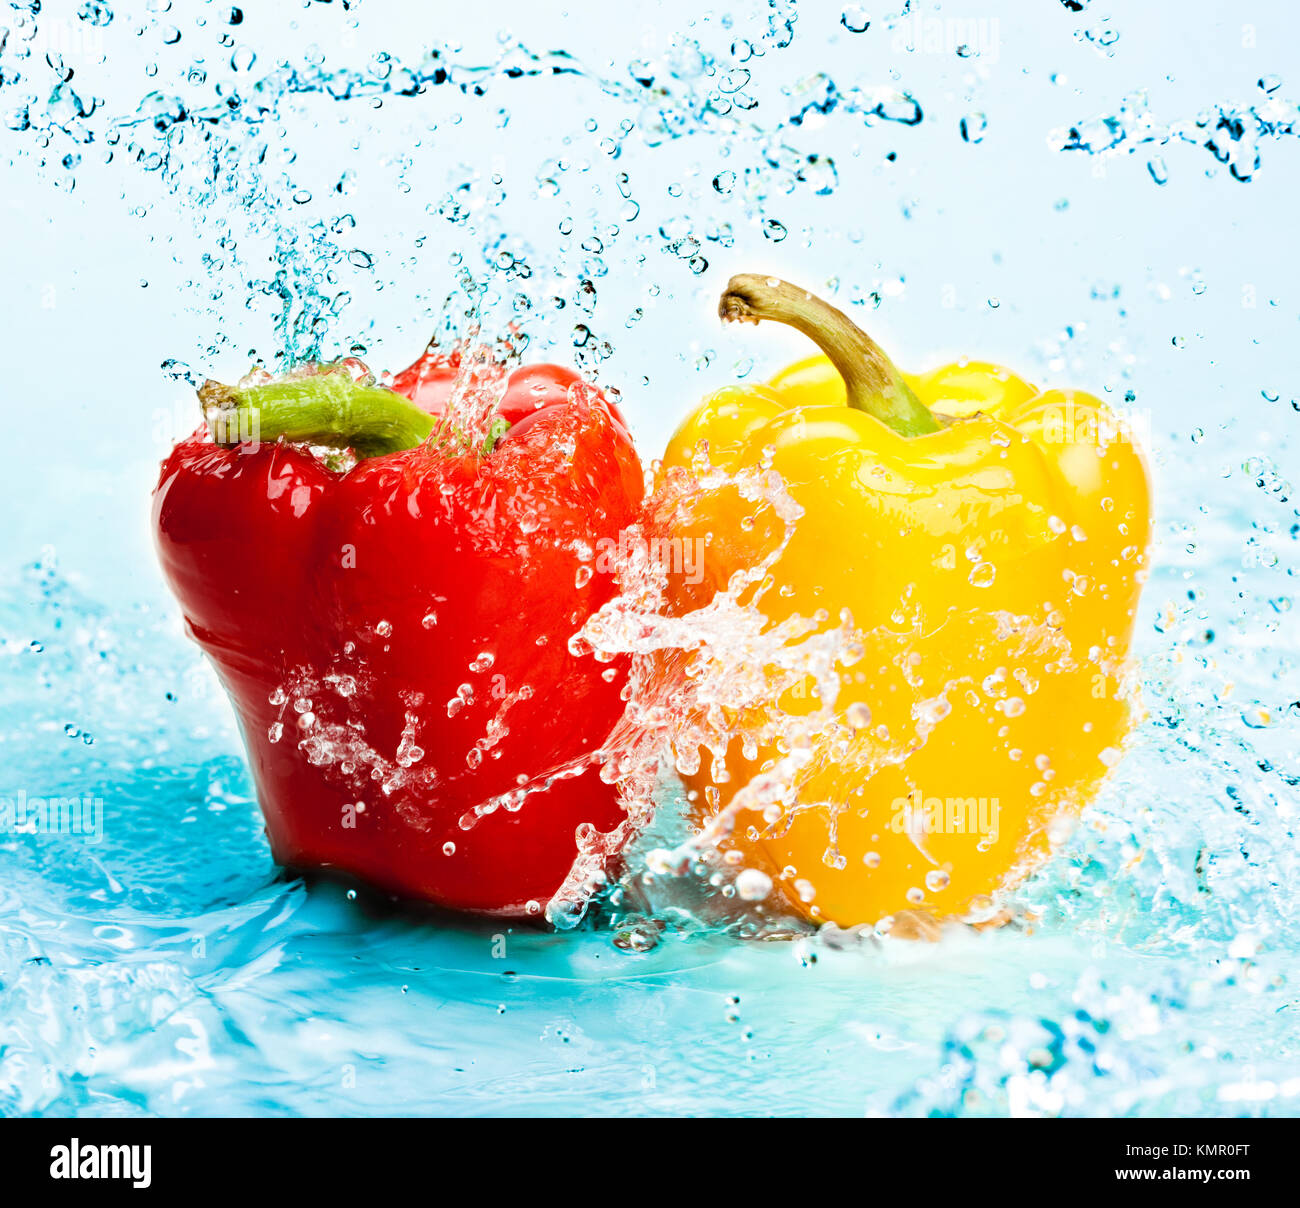 Water pepper. Фрукты в брызгах воды. Фрукты и овощи в воде. Вода перец. Болгарский перец в воде.